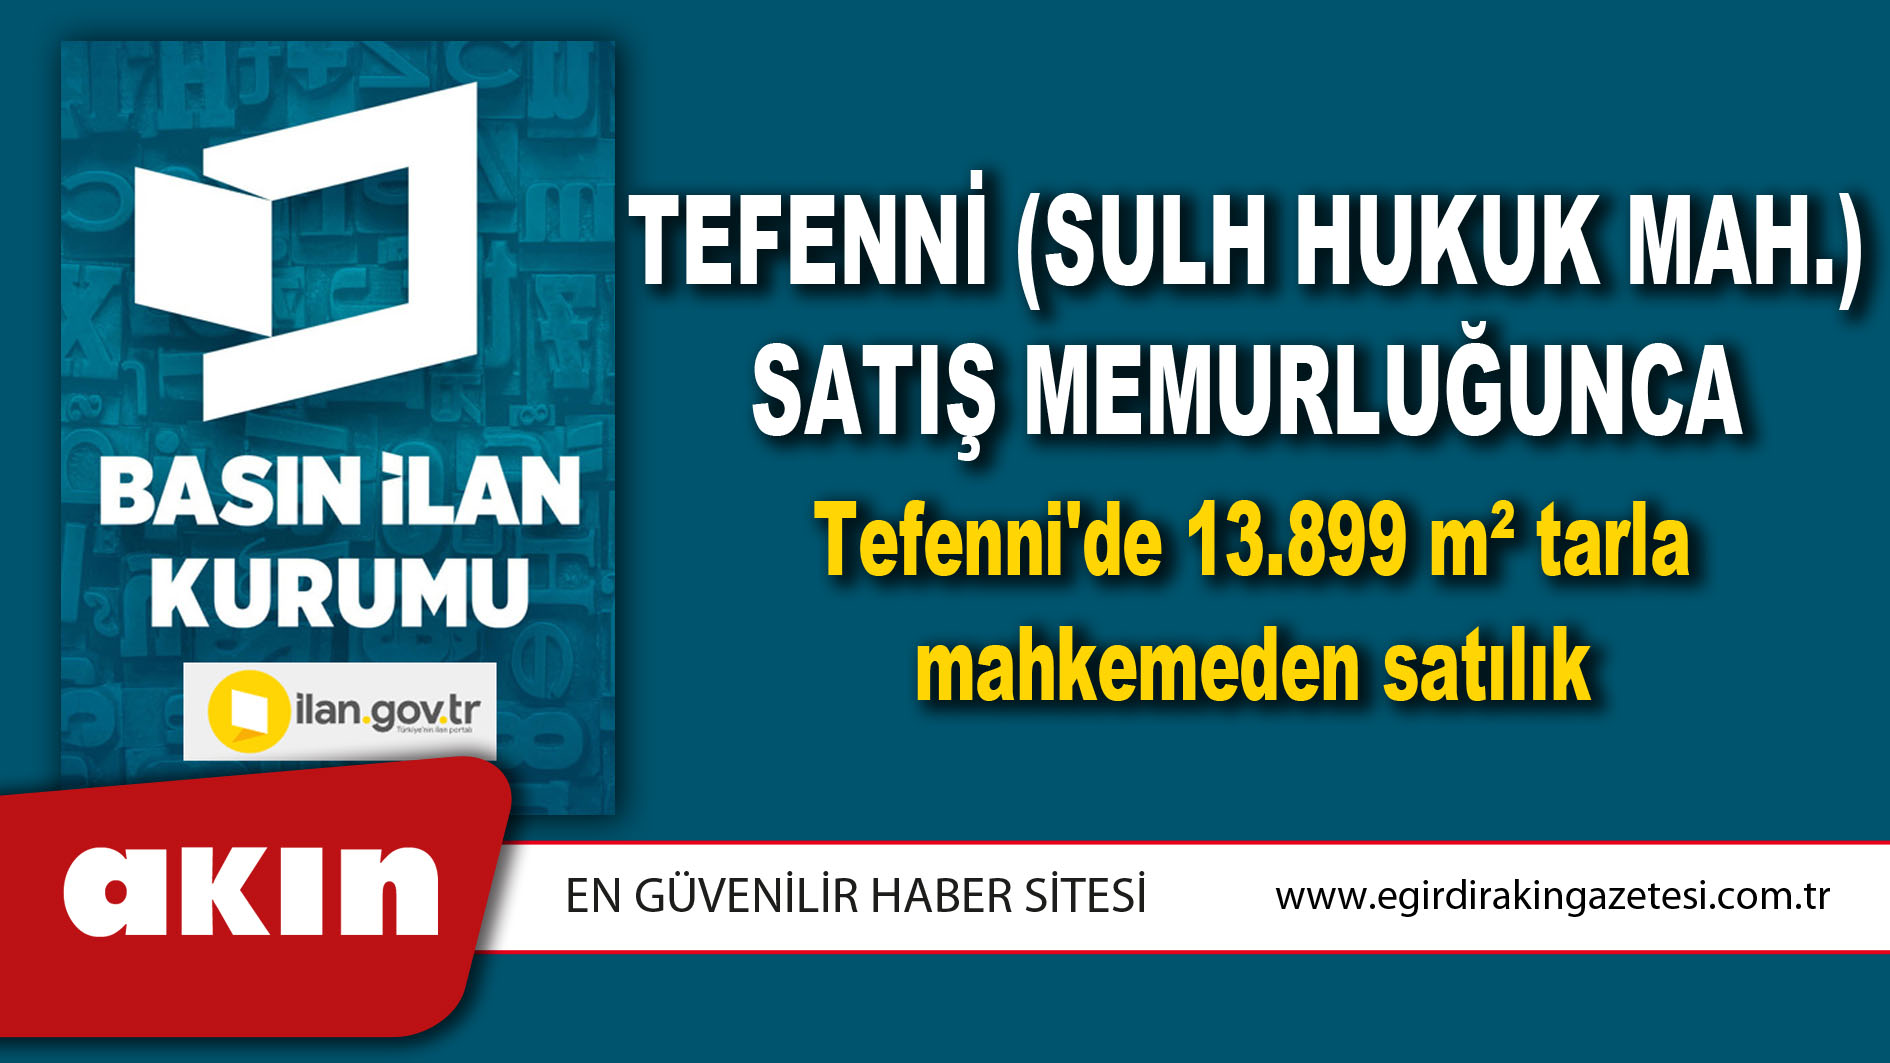 Tefenni (Sulh Hukuk Mah.) Satış Memurluğunca Tefenni'de 13.899 m² tarla mahkemeden satılık